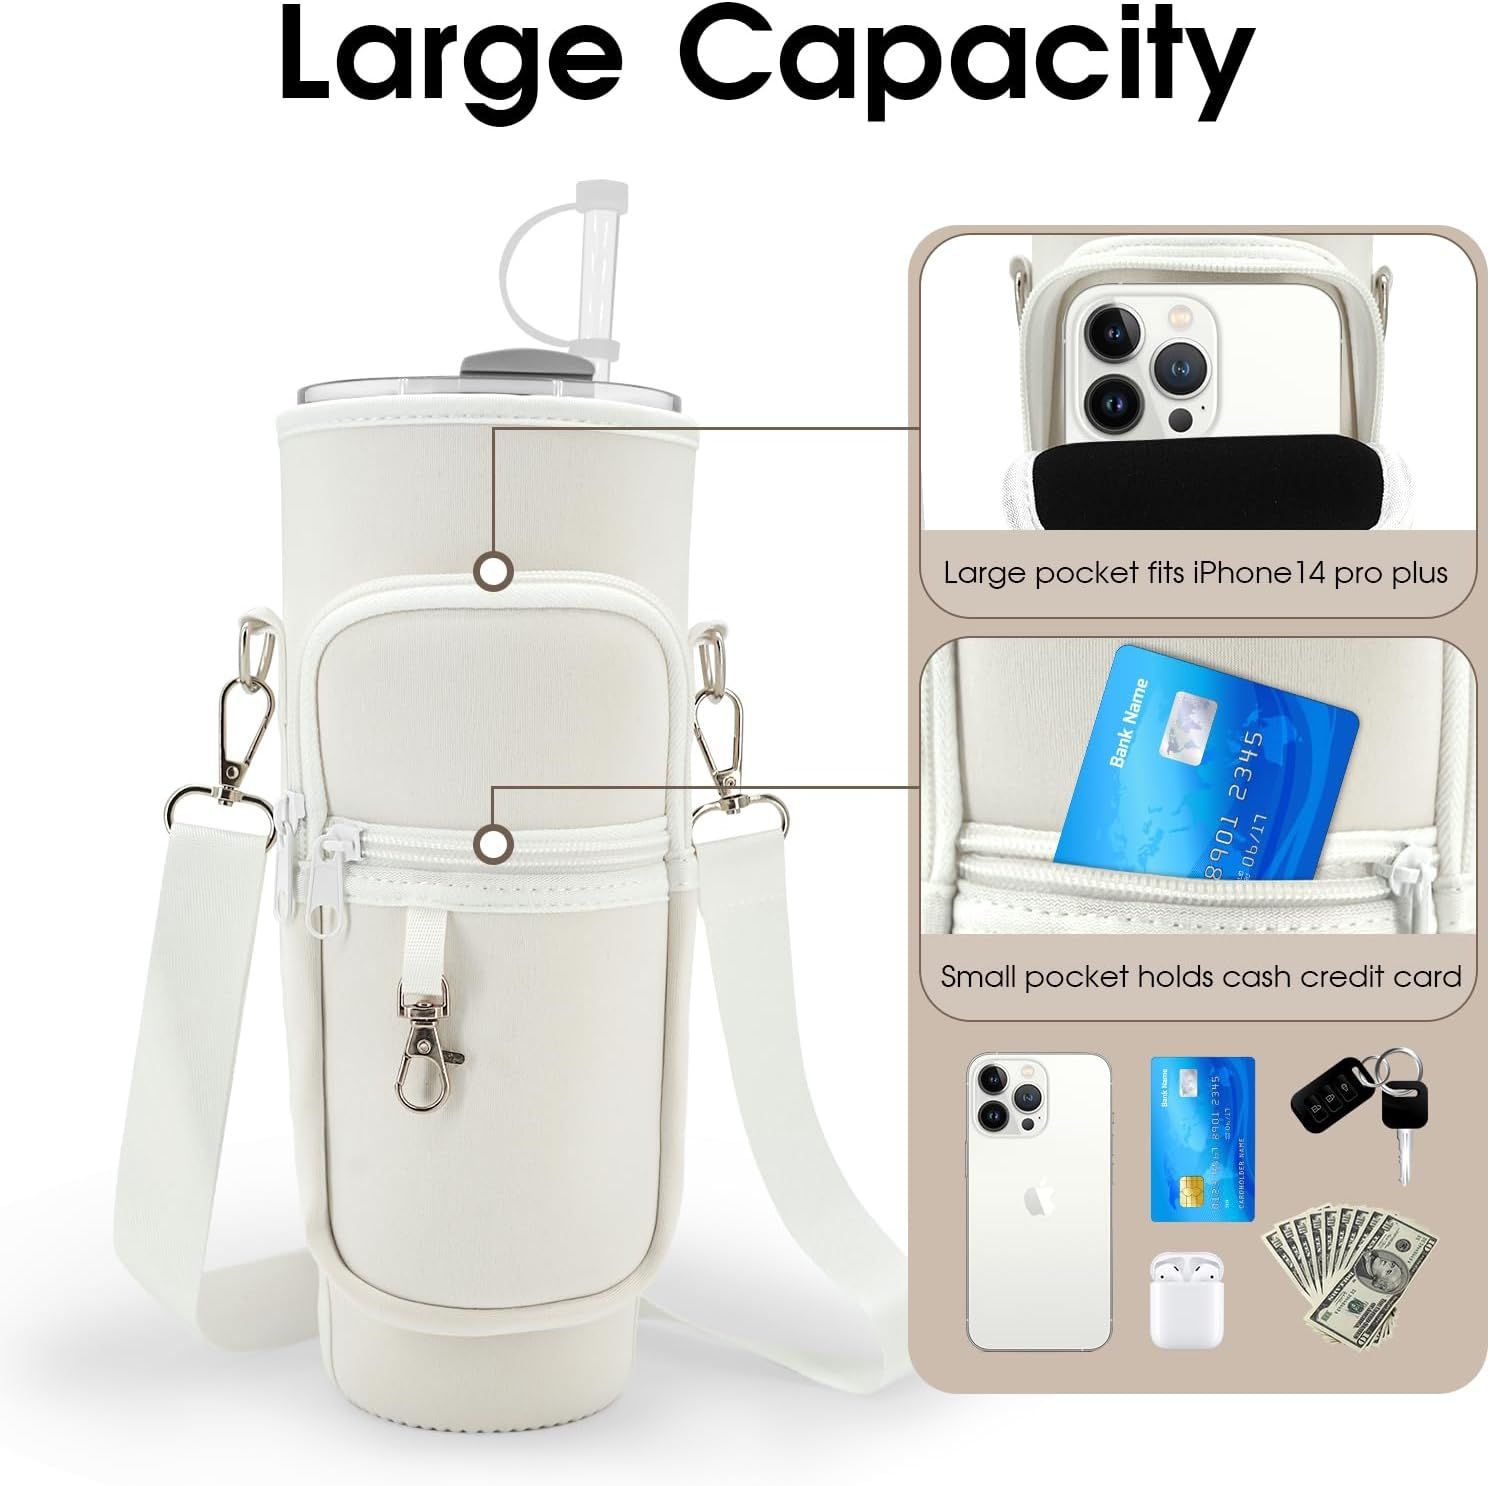 Stanley Compatible Water Bottle Holder Bag Set Quencher Tumbler 40